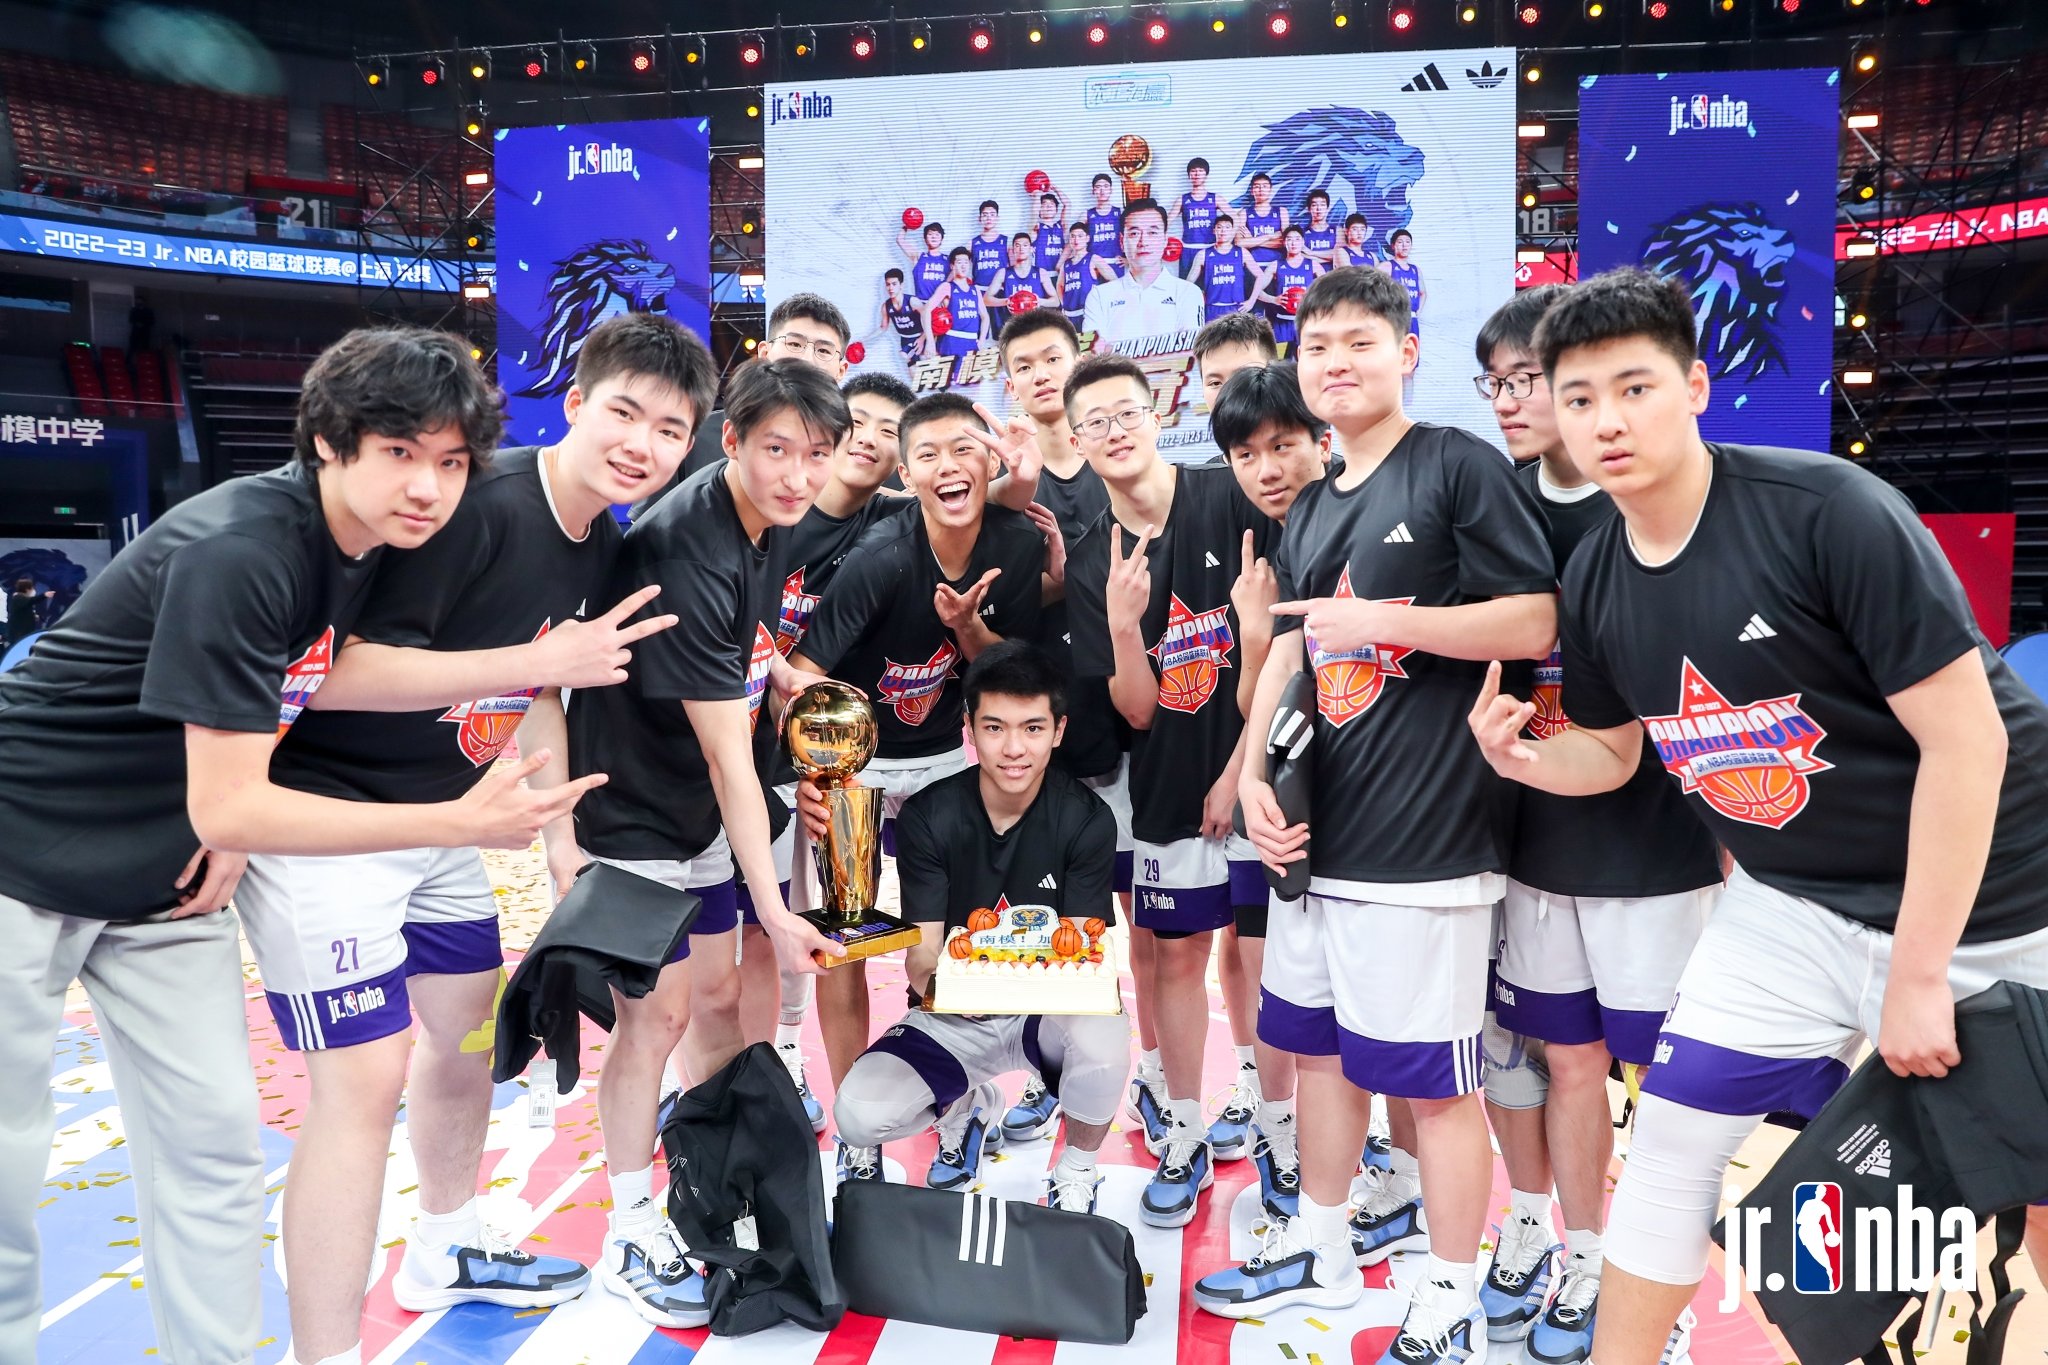 上海南洋模范中学拿到冠军。